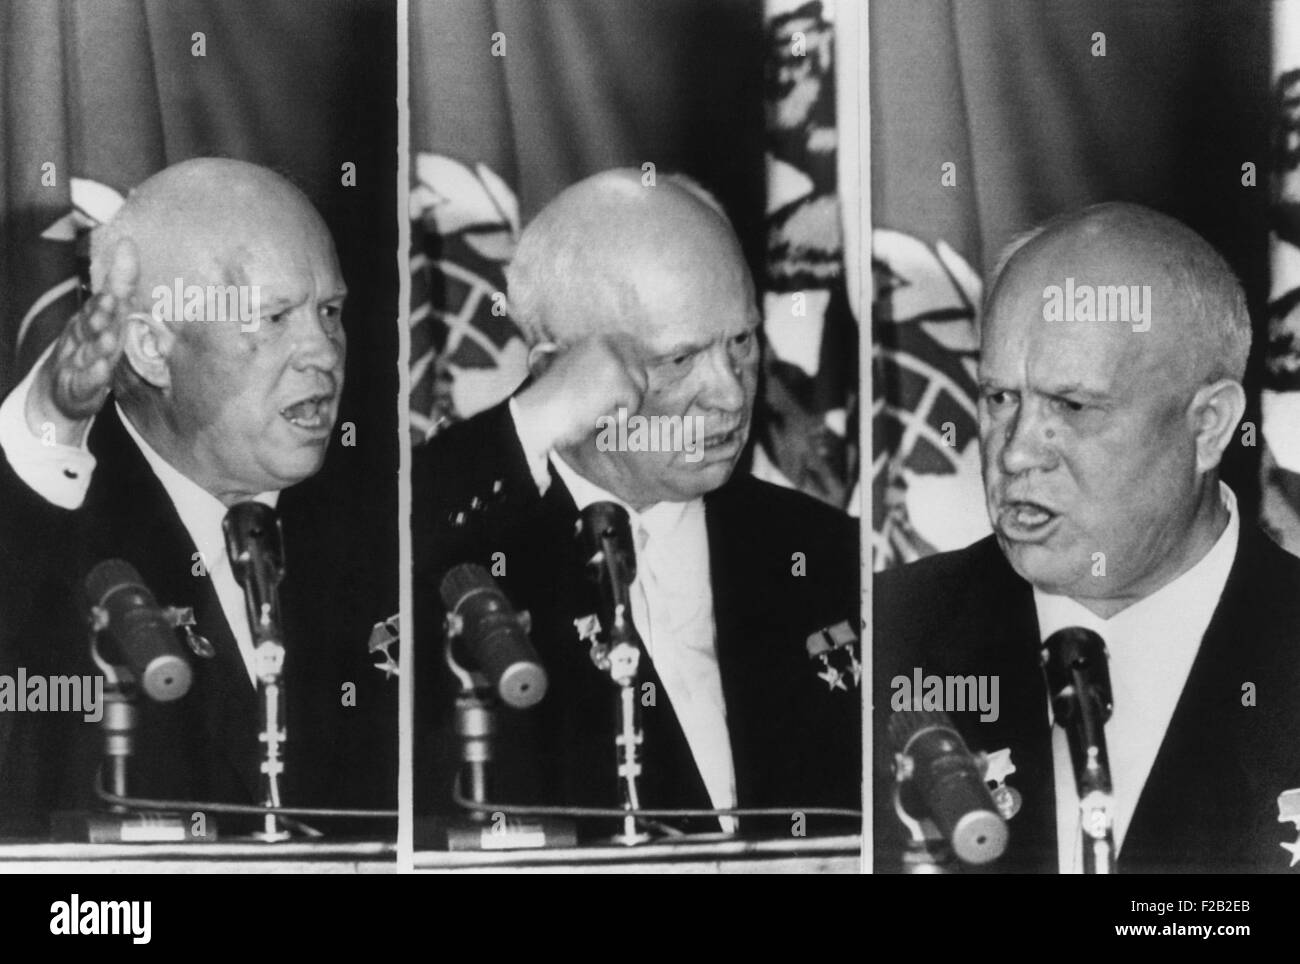 Sowjetischen Ministerpräsidenten Nikita Khrushchev Gesten als He reagiert auf L.A. Bürgermeister Norris Poulson Bemerkungen. Auf dem Bankett von Los Angeles World Affairs Council gegeben, bezeichnet Poulson undiplomatisch Khrushchevs unglücklichen 1956, "Wir werden Sie zu Grabe tragen" Bemerkung. (CSU 2015 8 551) Stockfoto